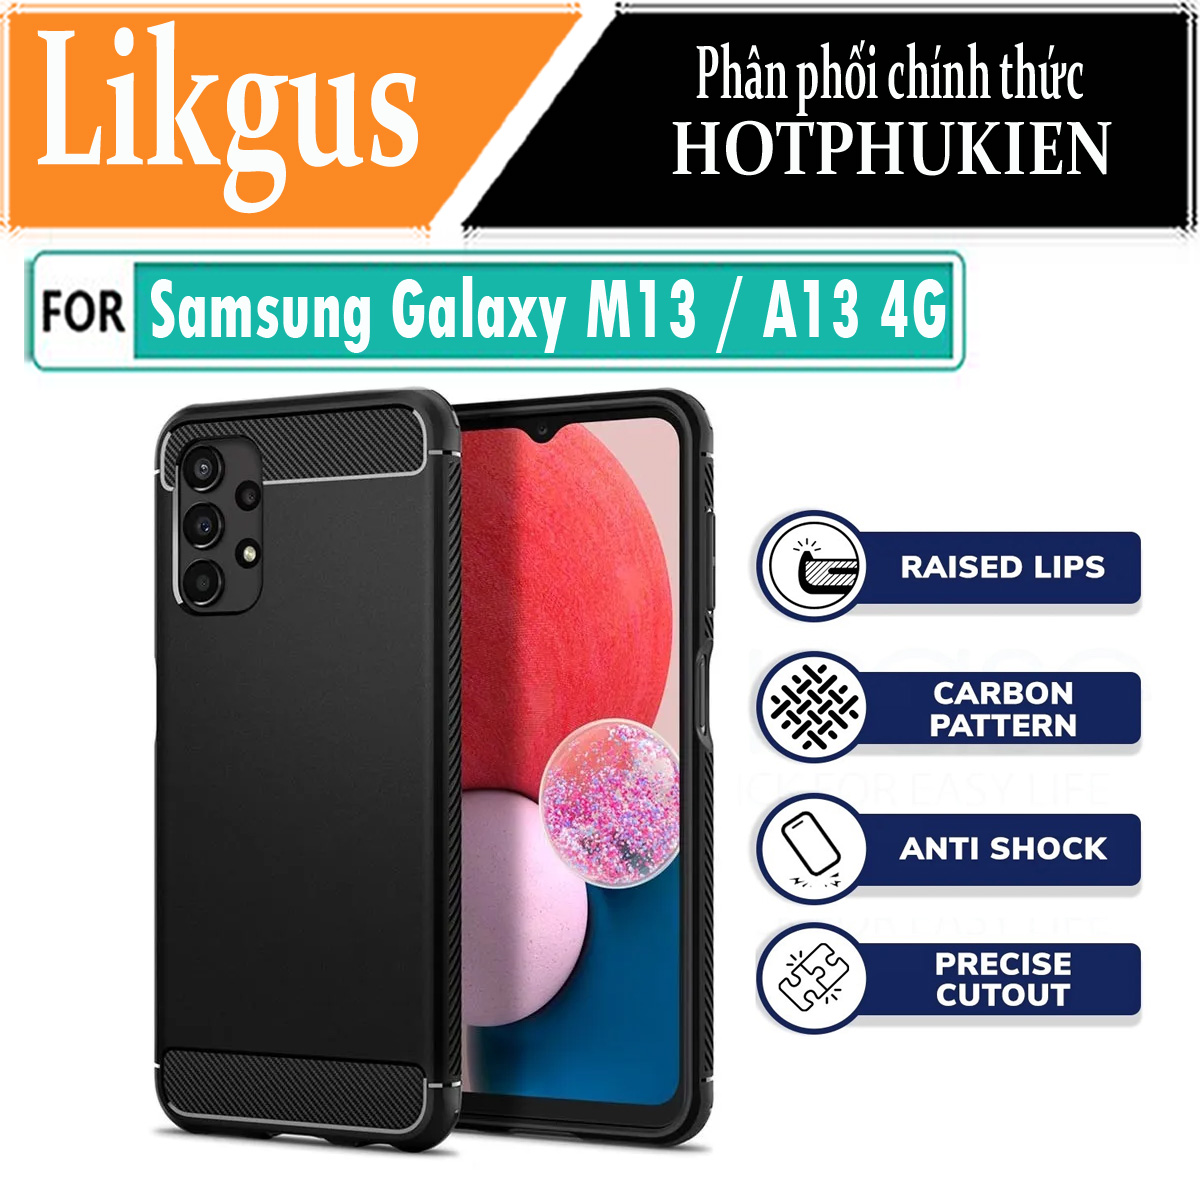 Ốp lưng chống sốc vân kim loại cho Samsung Galaxy M13 / A13 4G hiệu Likgus (chuẩn quân đội, chống va đập, chống vân tay) - Hàng nhập khẩu